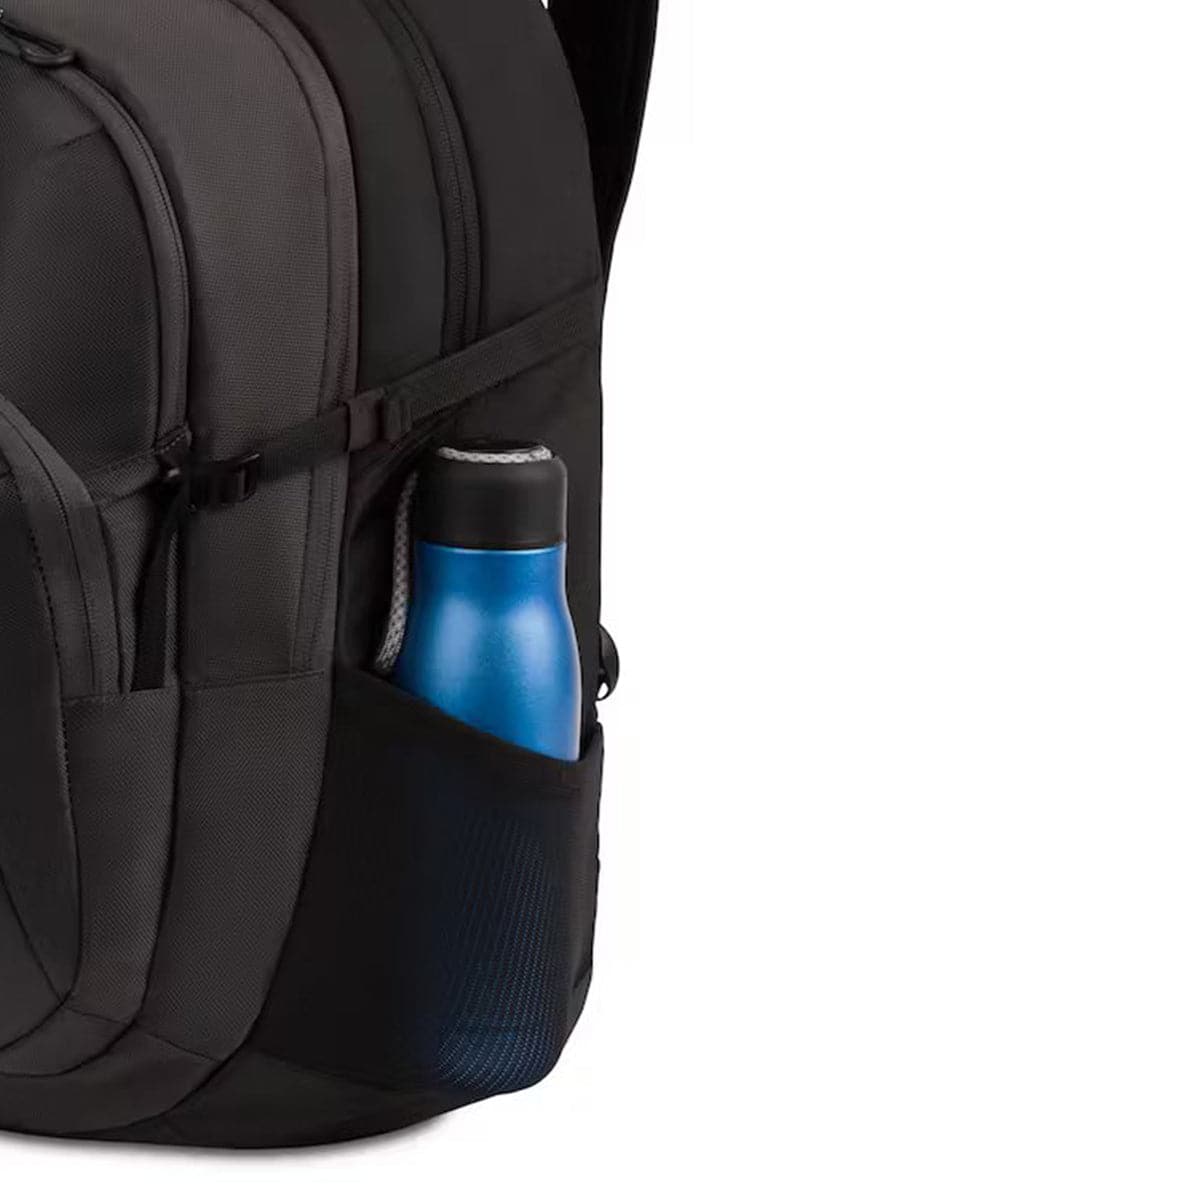 SwissGear 8173 17" Laptop Backpack